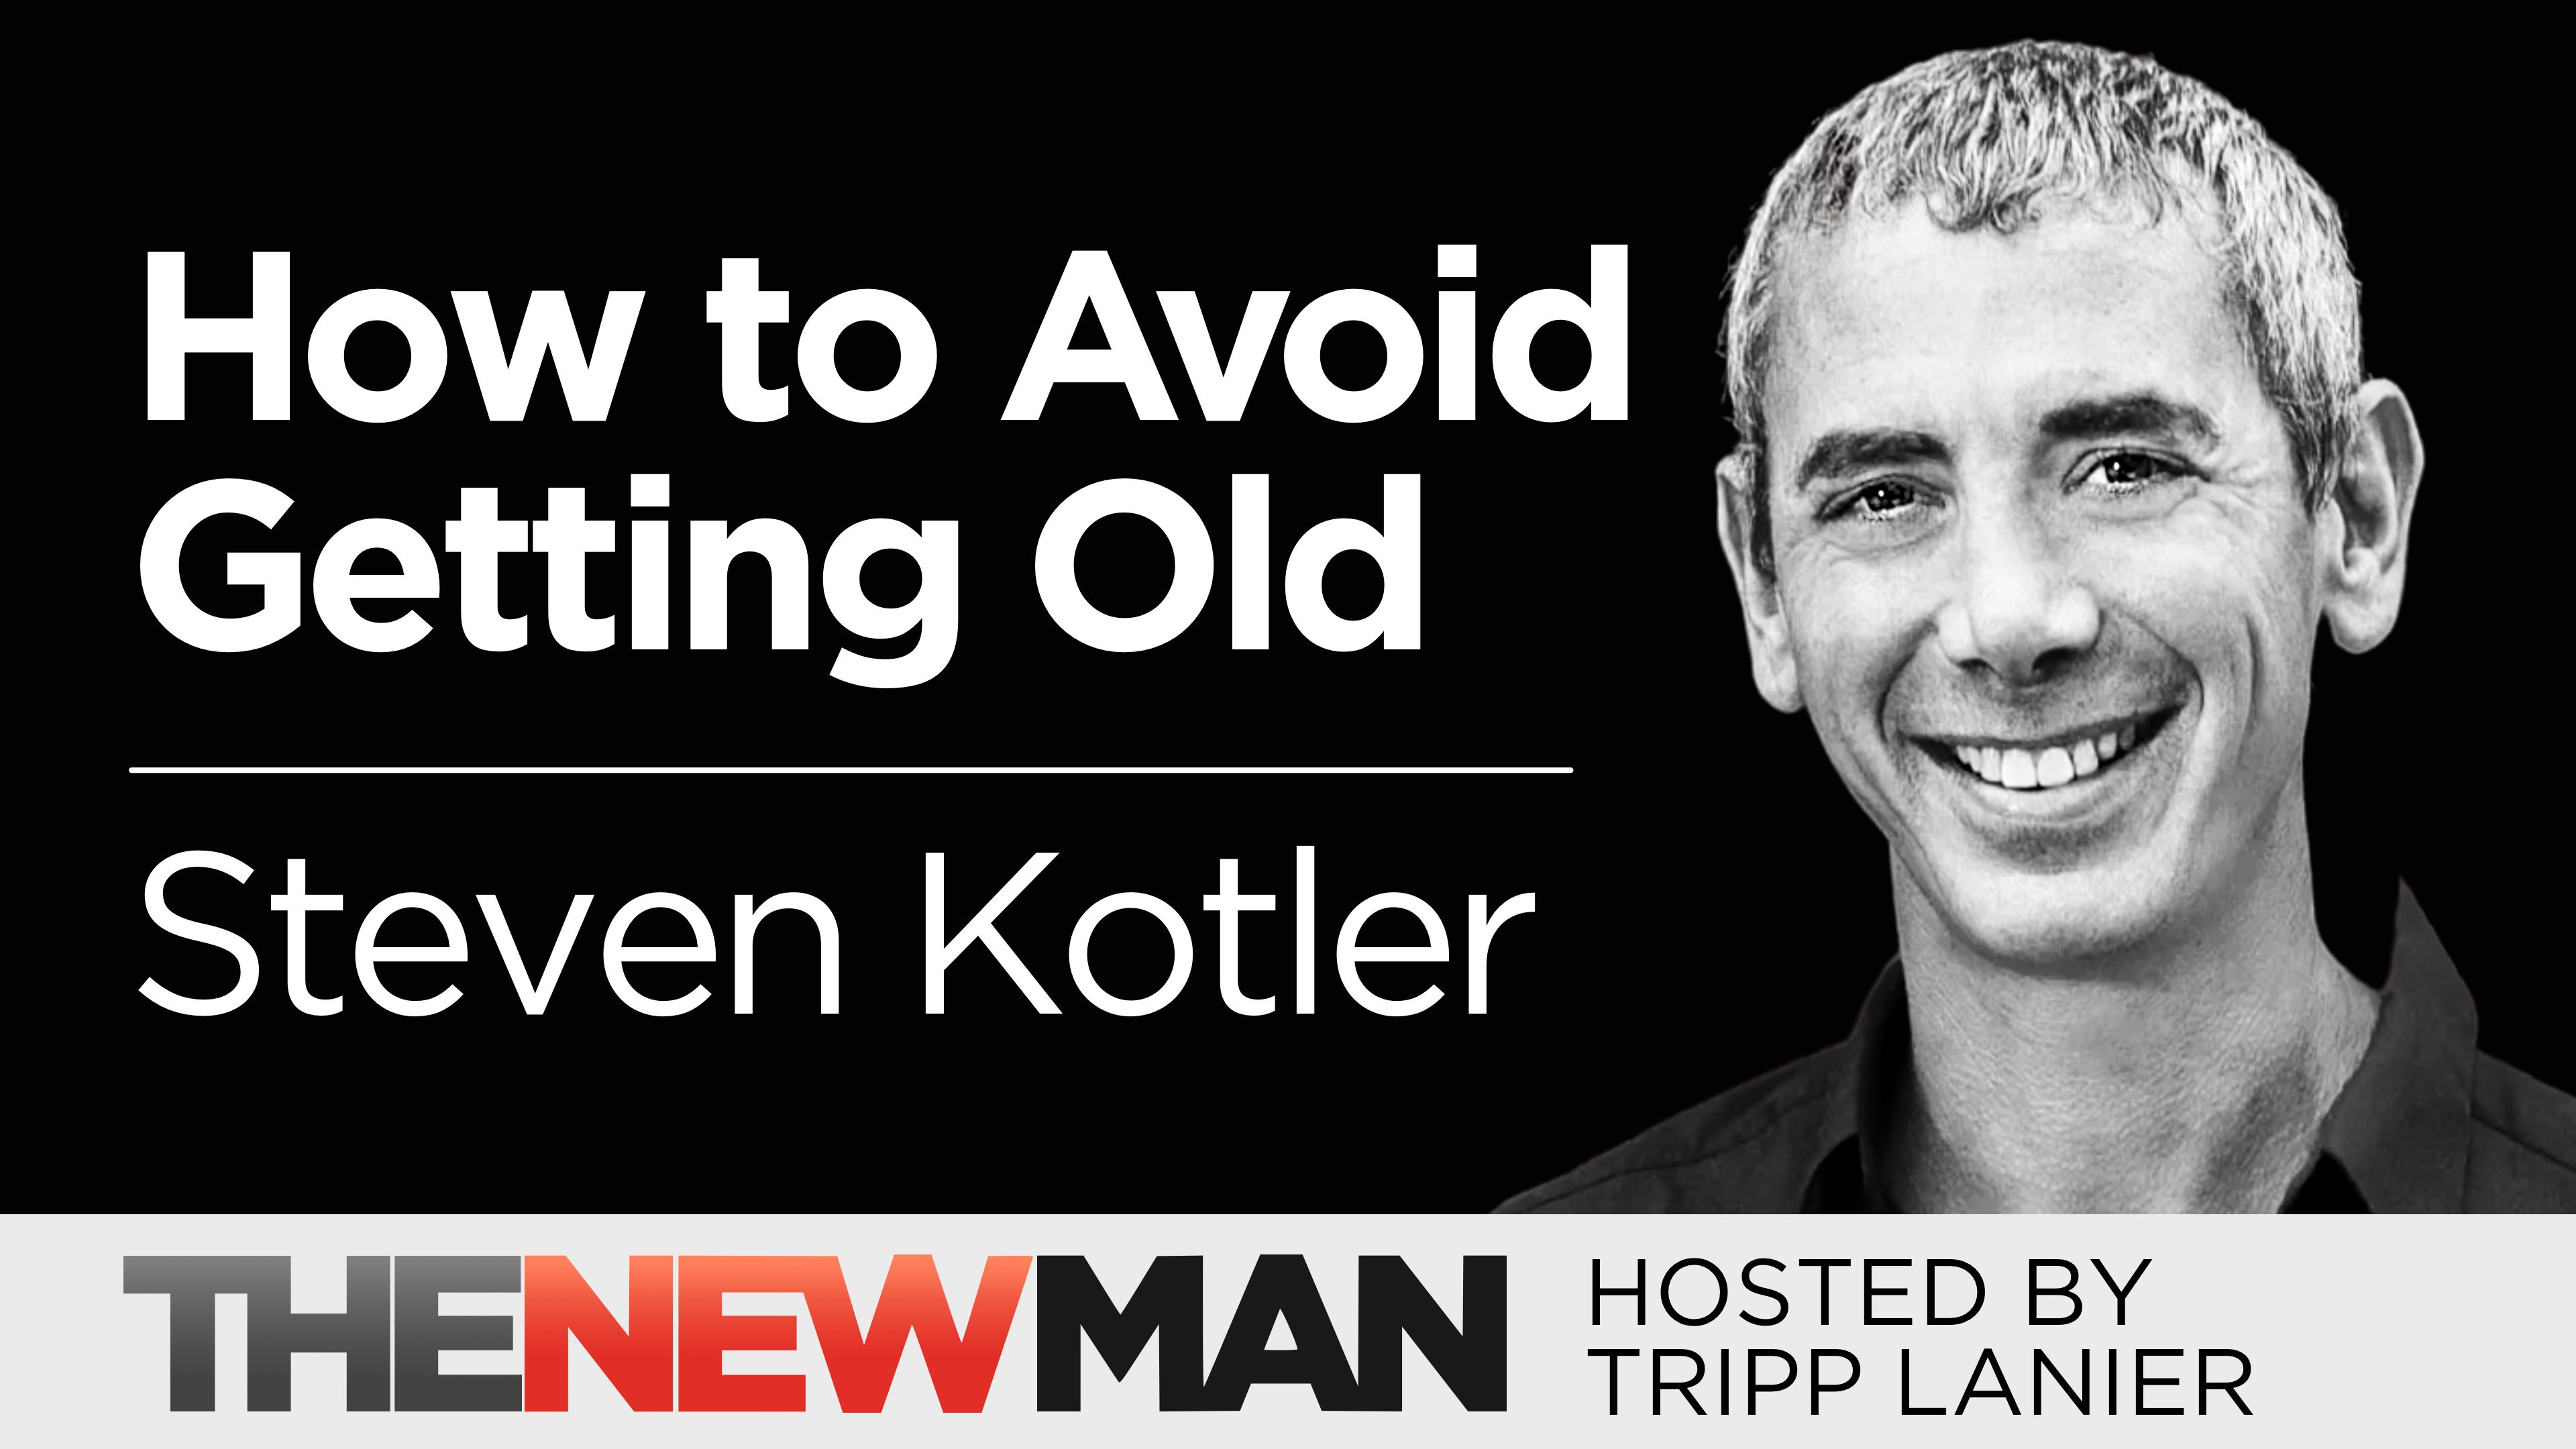 Old is Just a Mindset – Steven Kotler